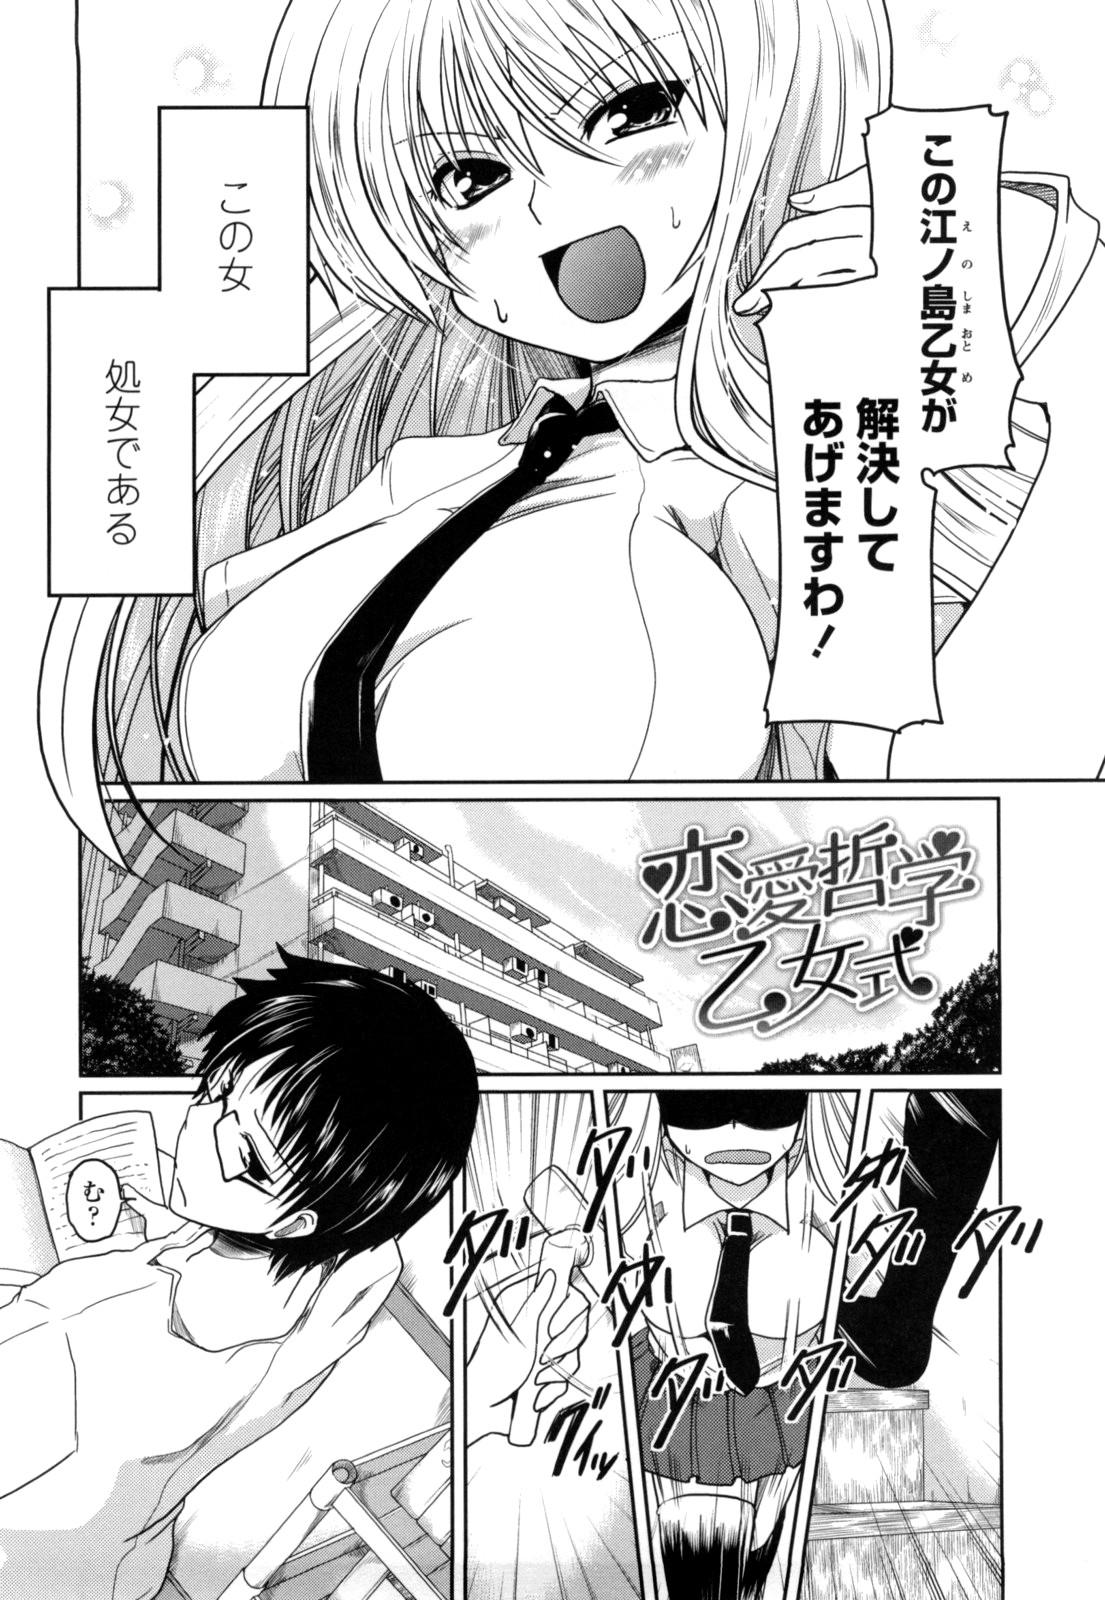 Peluda Imouto to Tsukiau 11 no Houhou Threeway - Page 6